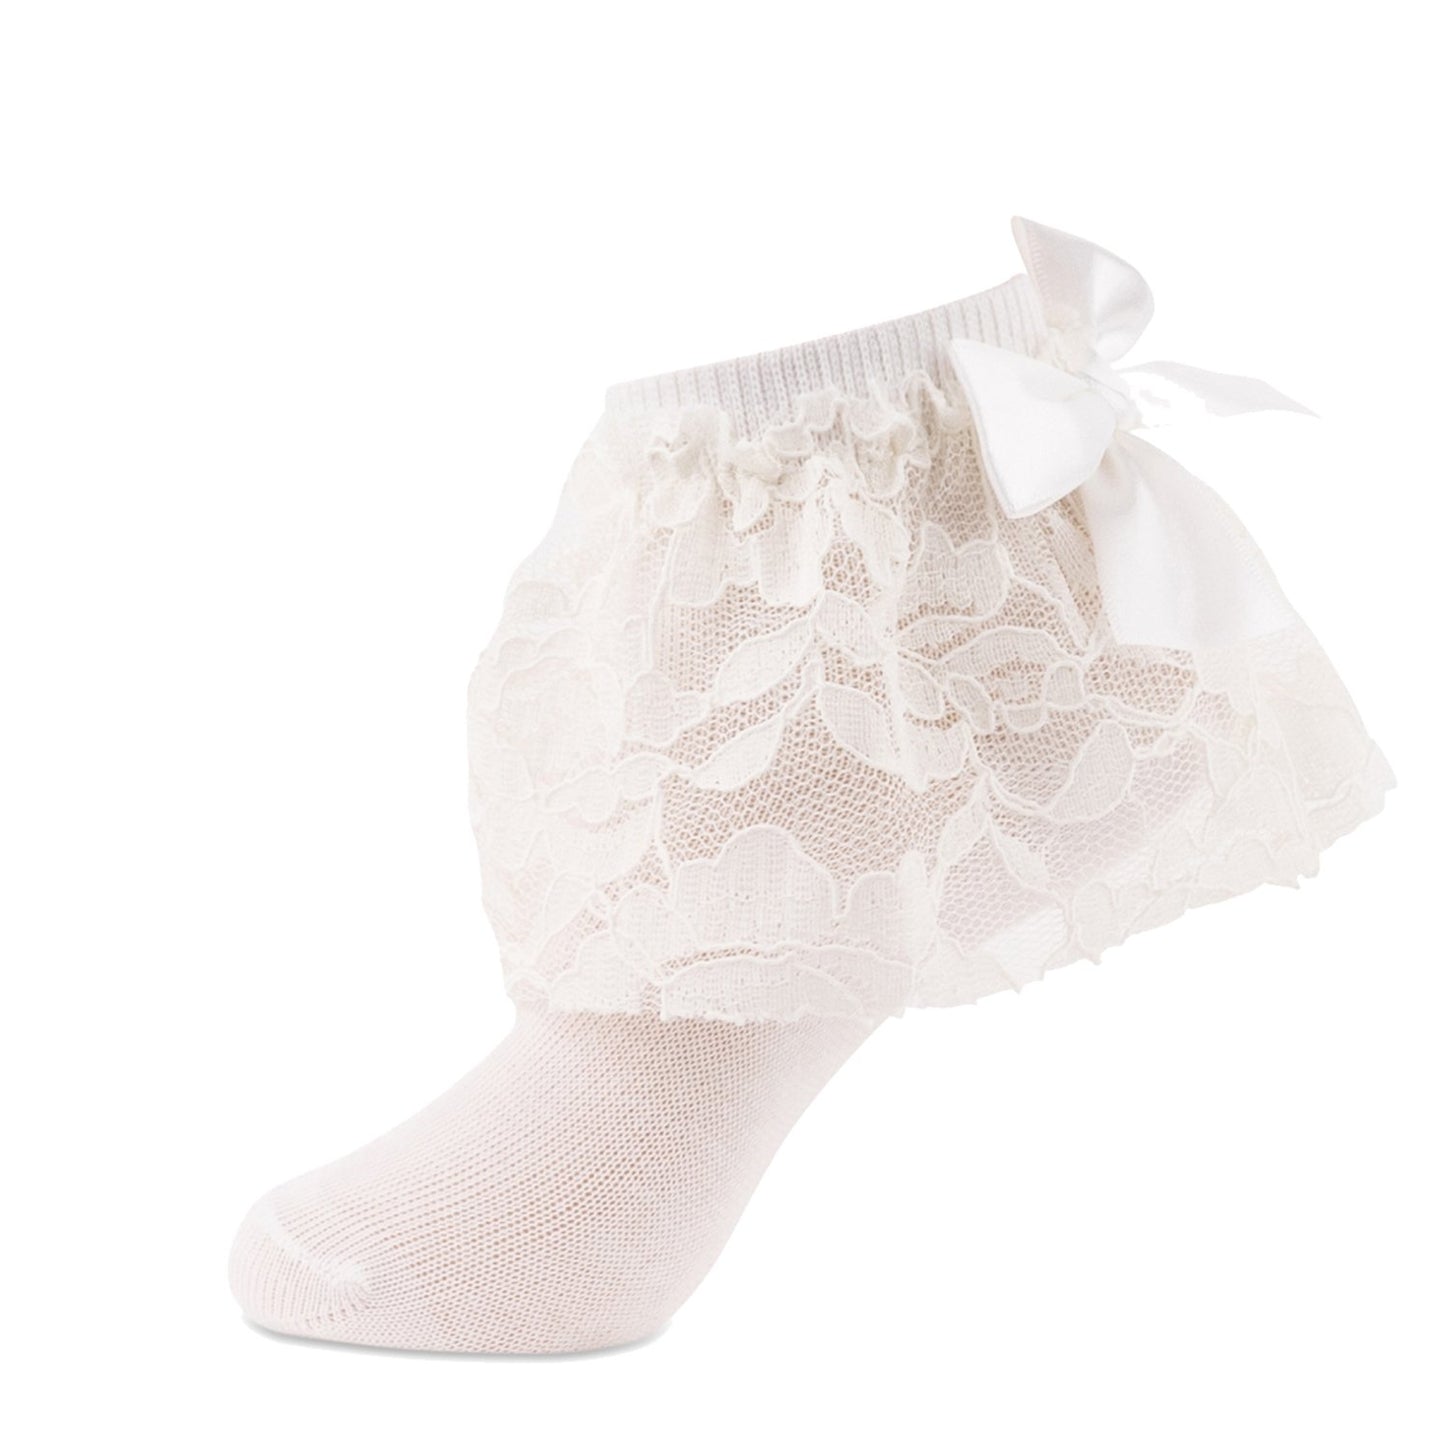 jrp socks ivory floral lace anklet sock